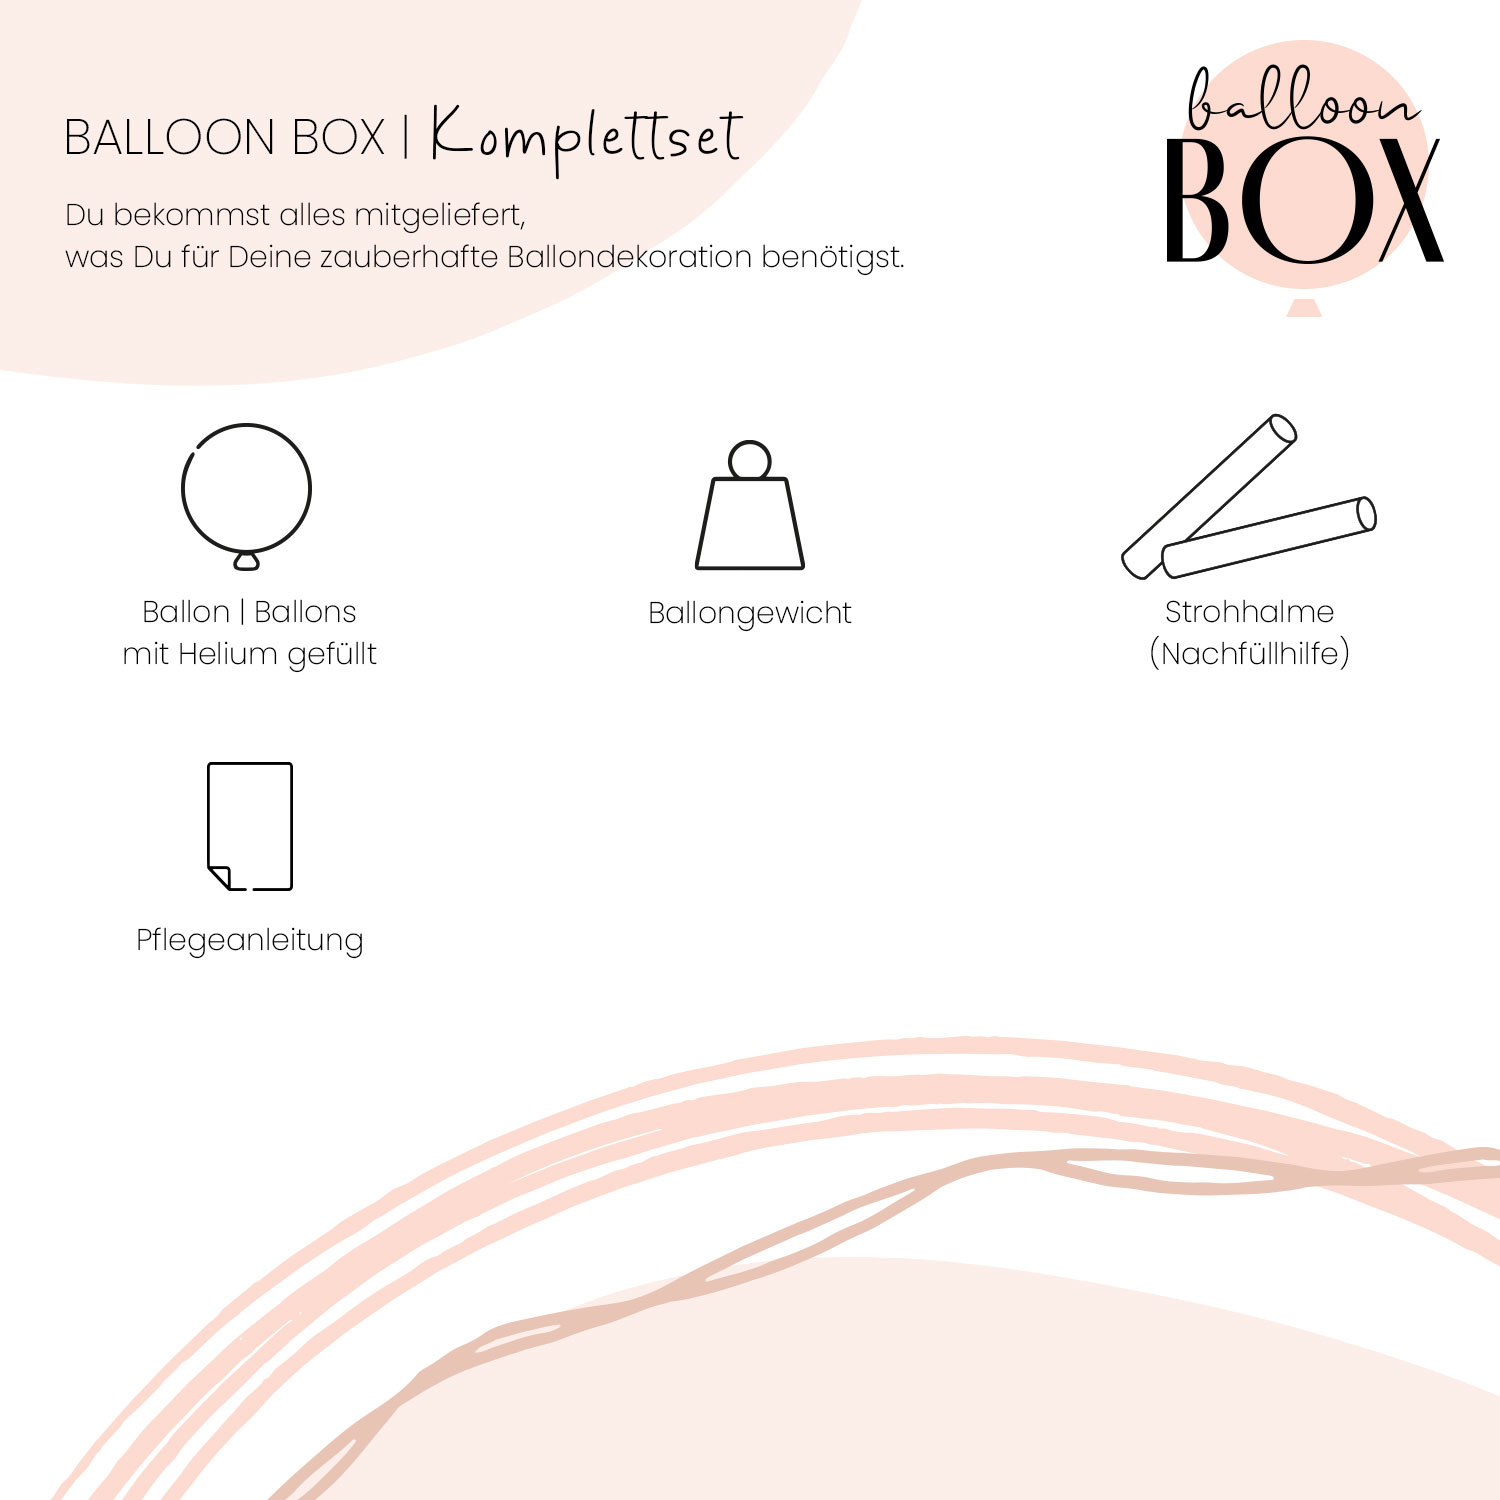 Heliumballon in a Box - Konfirmation Regenbogen